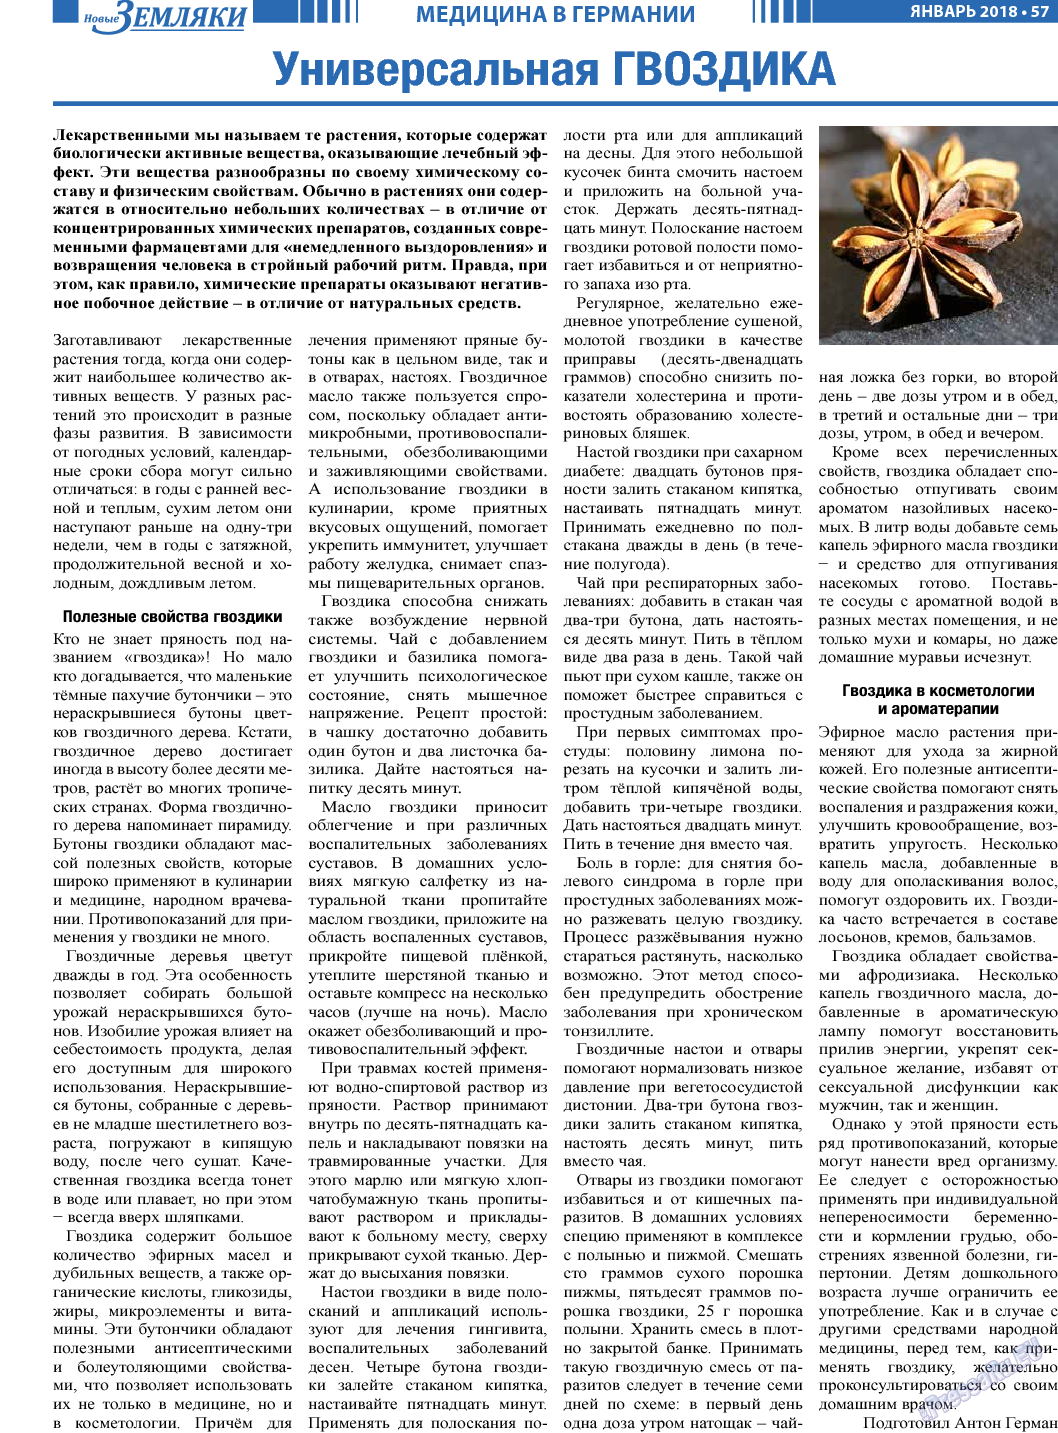 Новые Земляки, газета. 2018 №1 стр.57